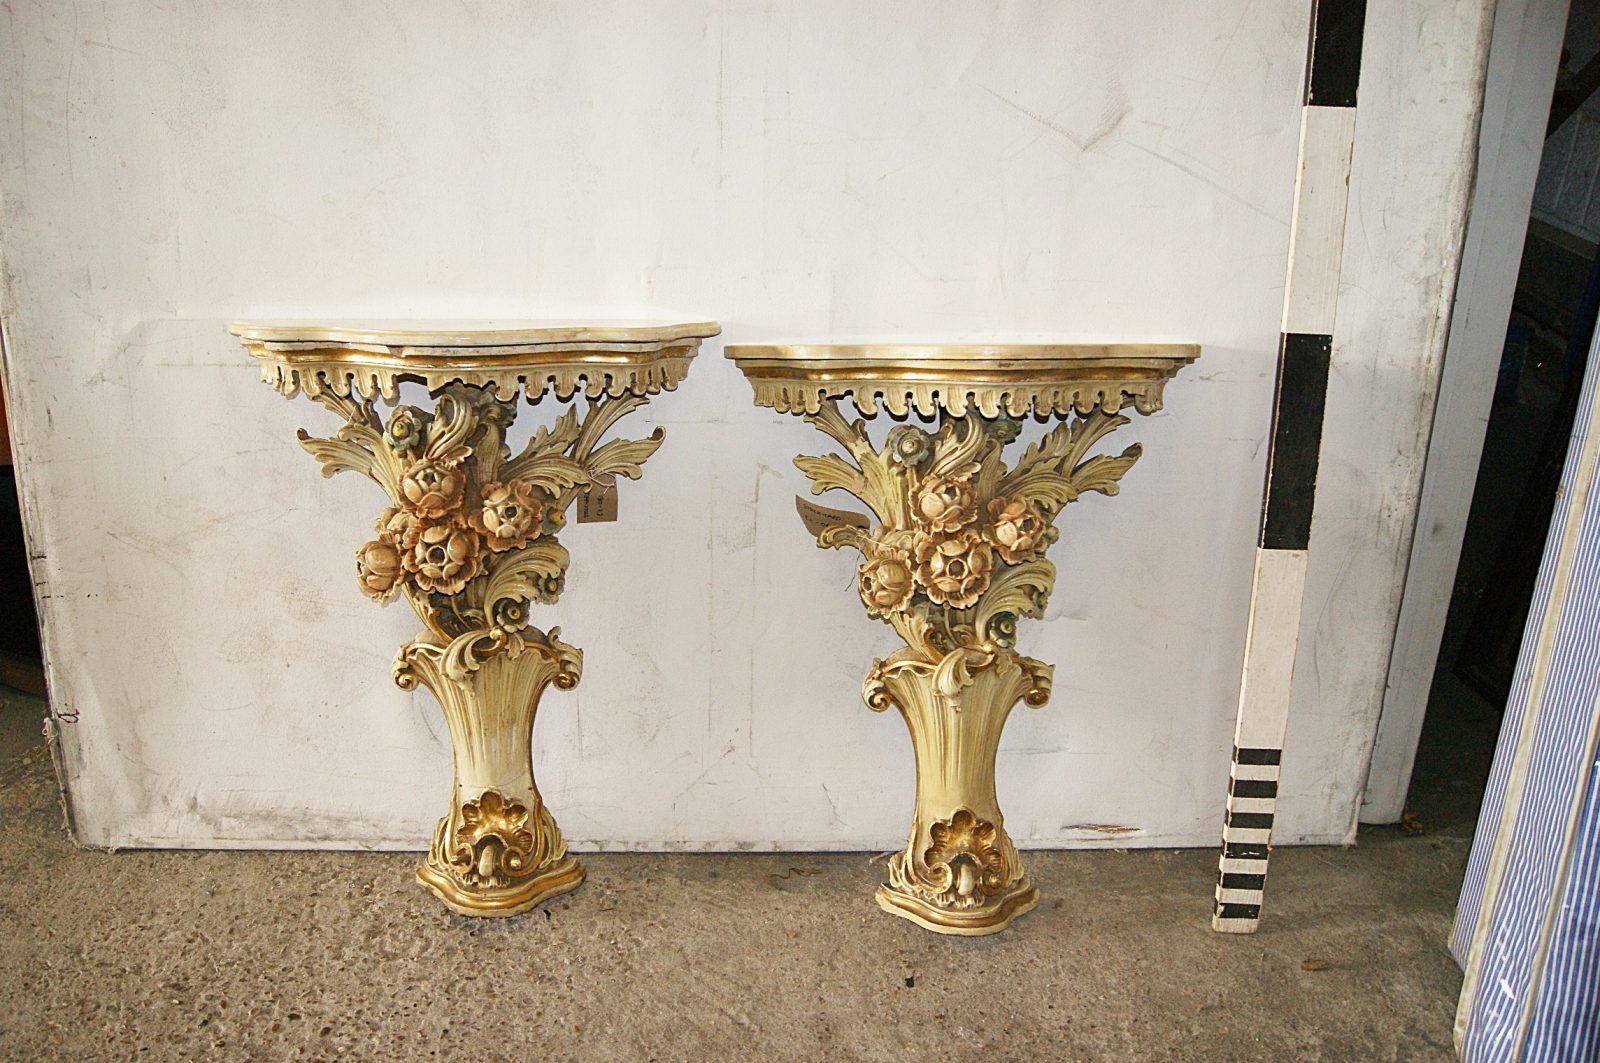 decorative pedestals in a living room